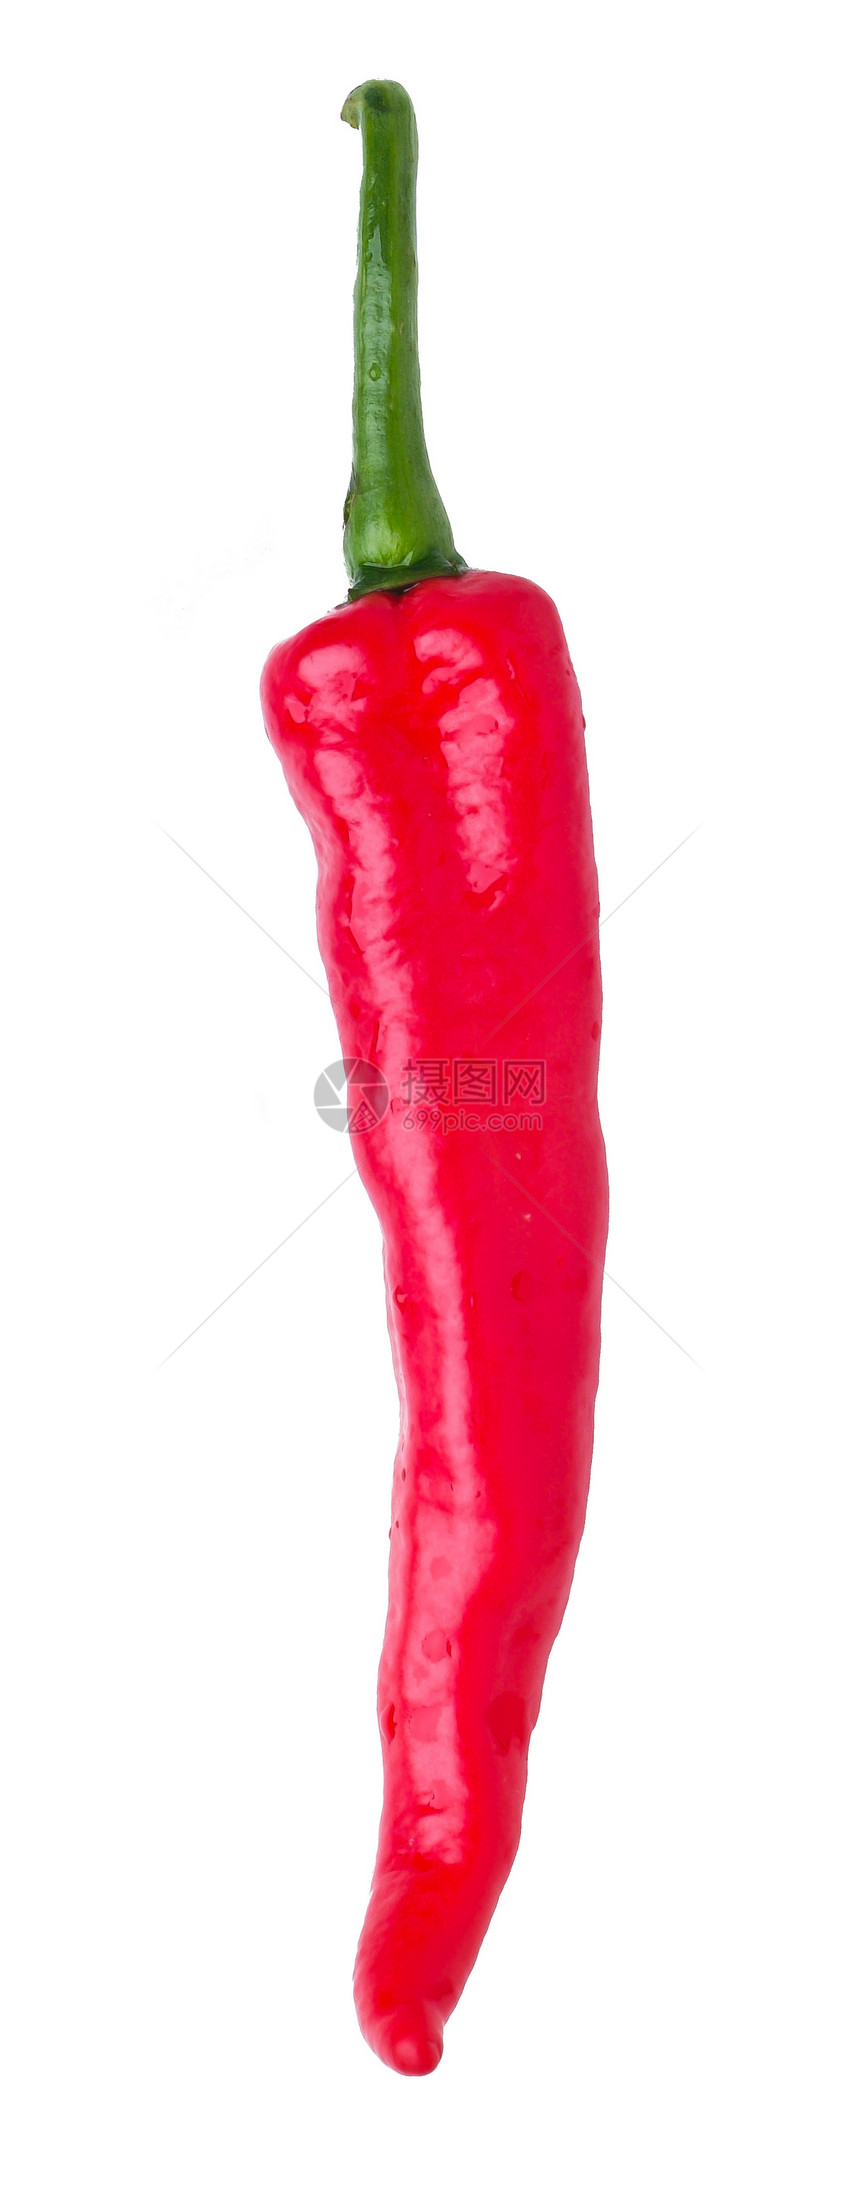 红辣椒食物孤独蔬菜辣椒胡椒香料寒冷红色图片